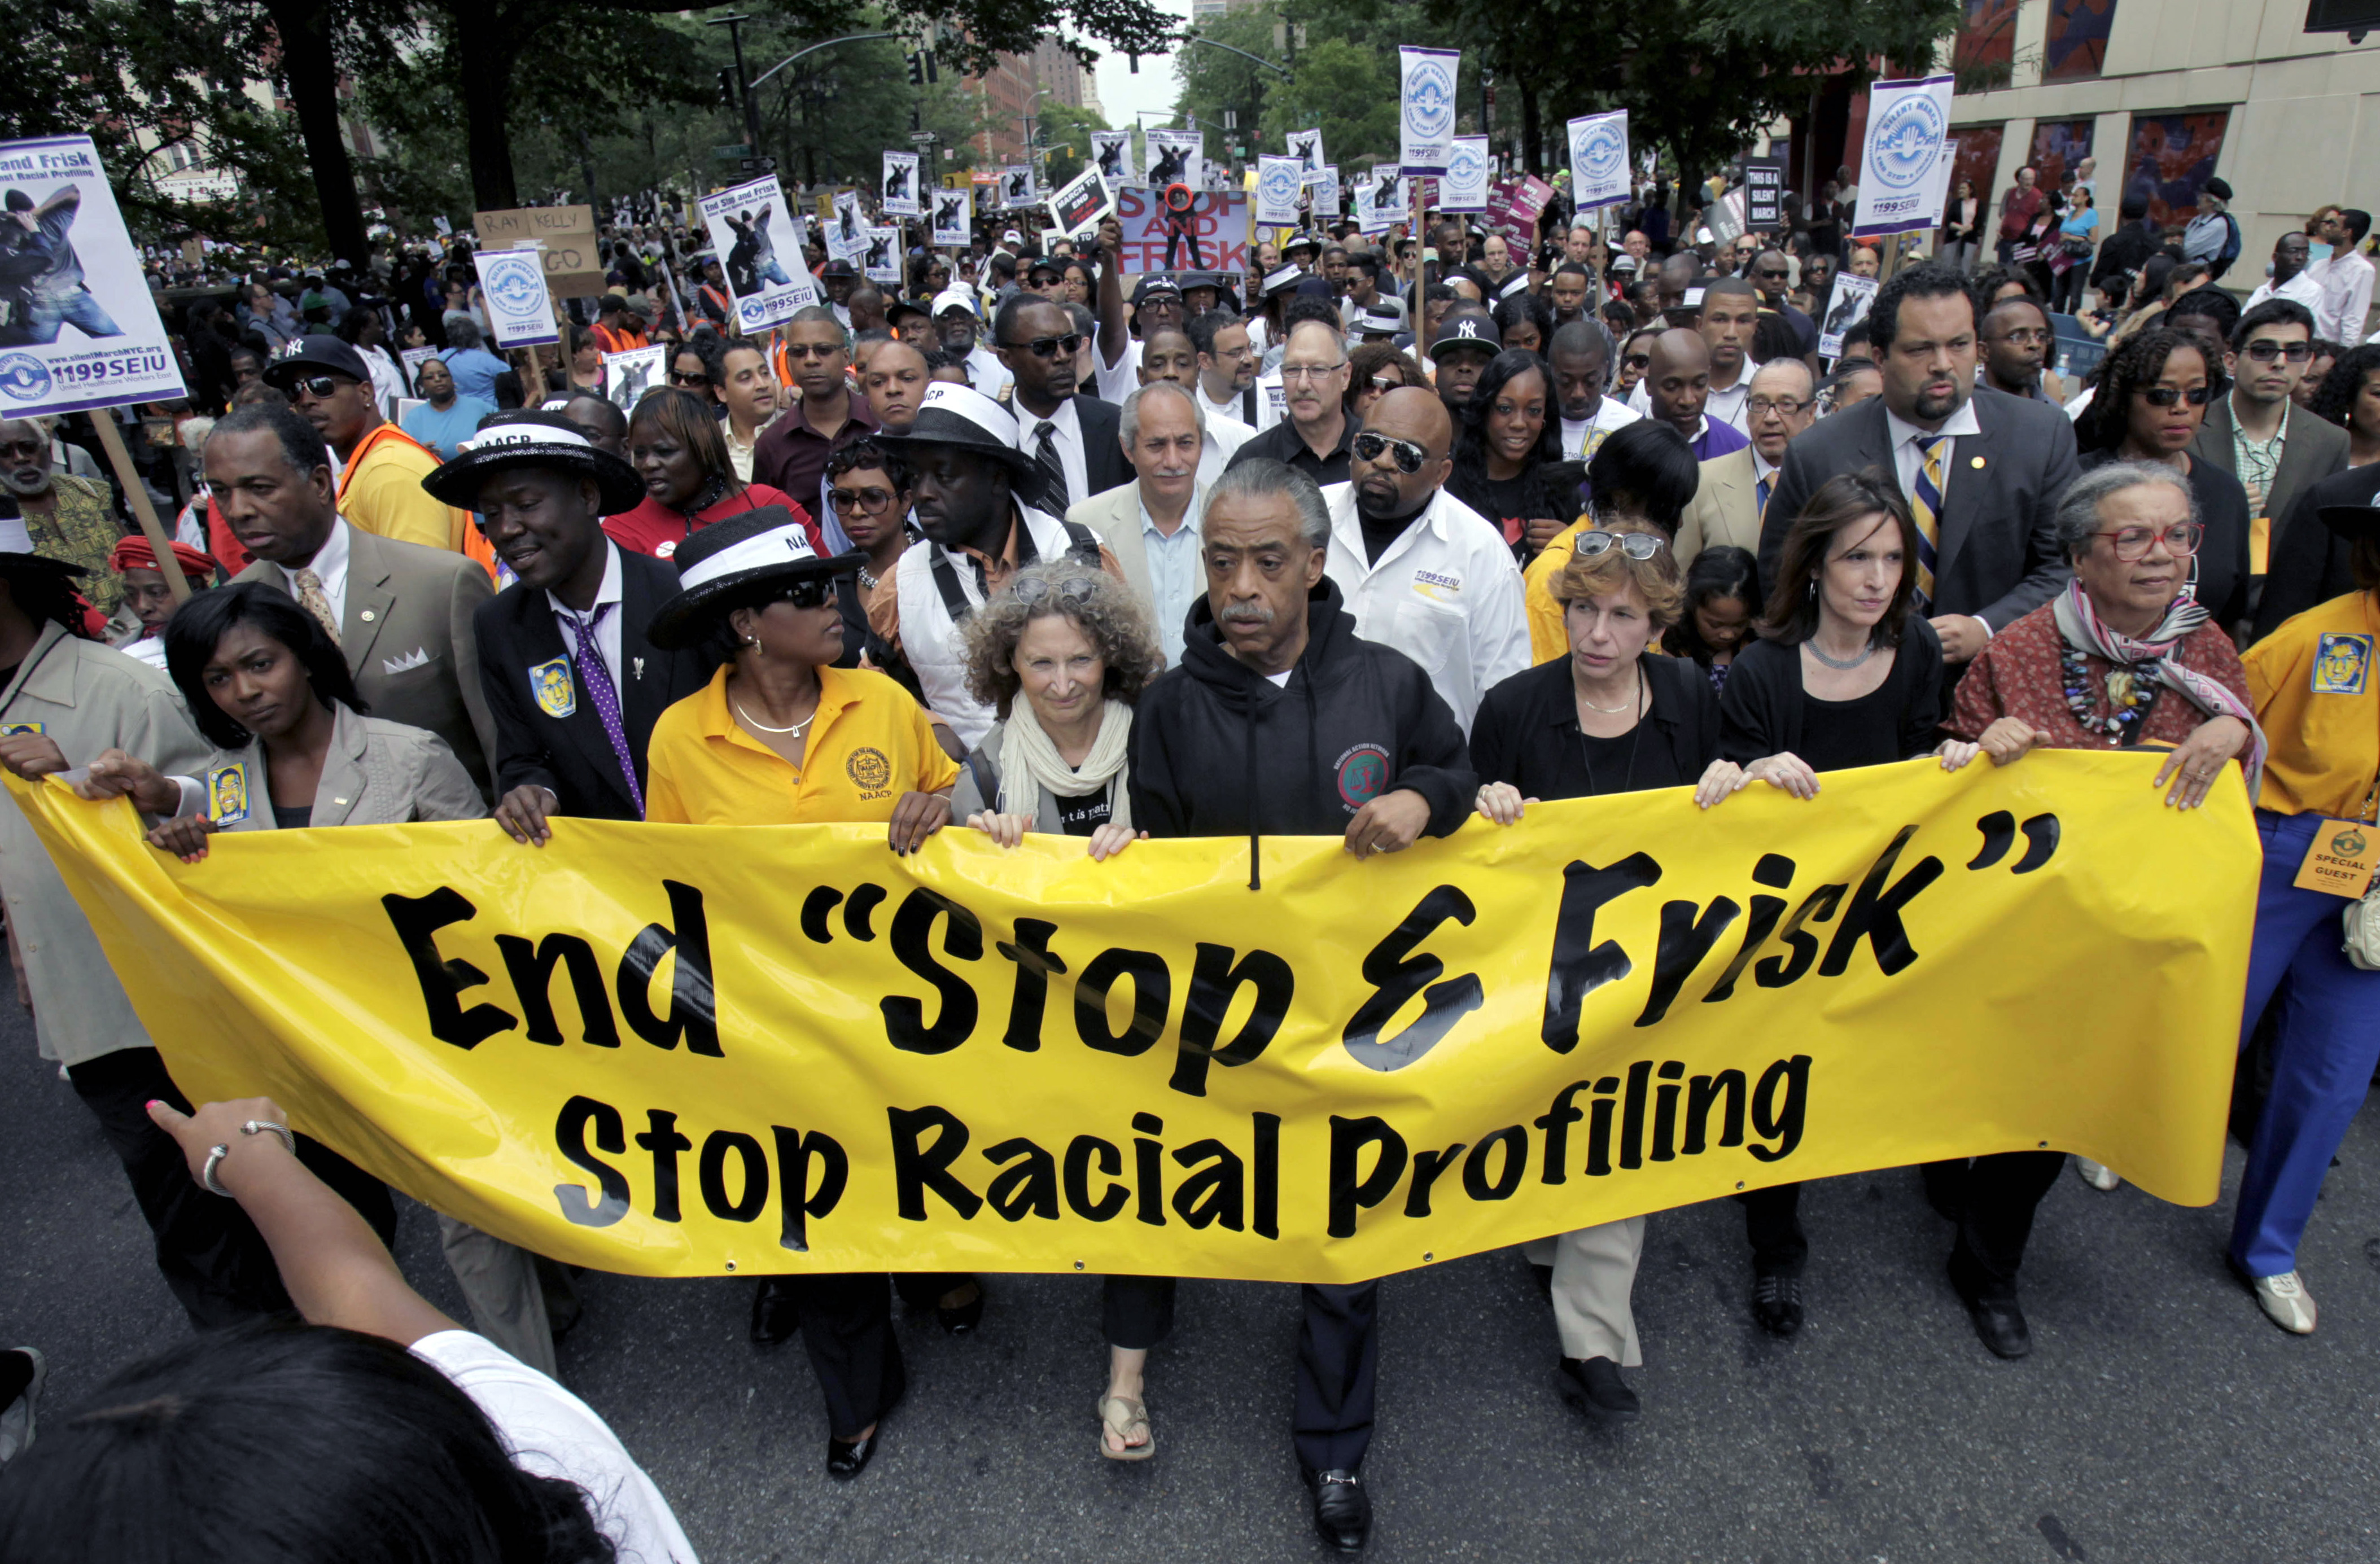 "Stop and frisk" har fått kritik för att vara rasistiskt.